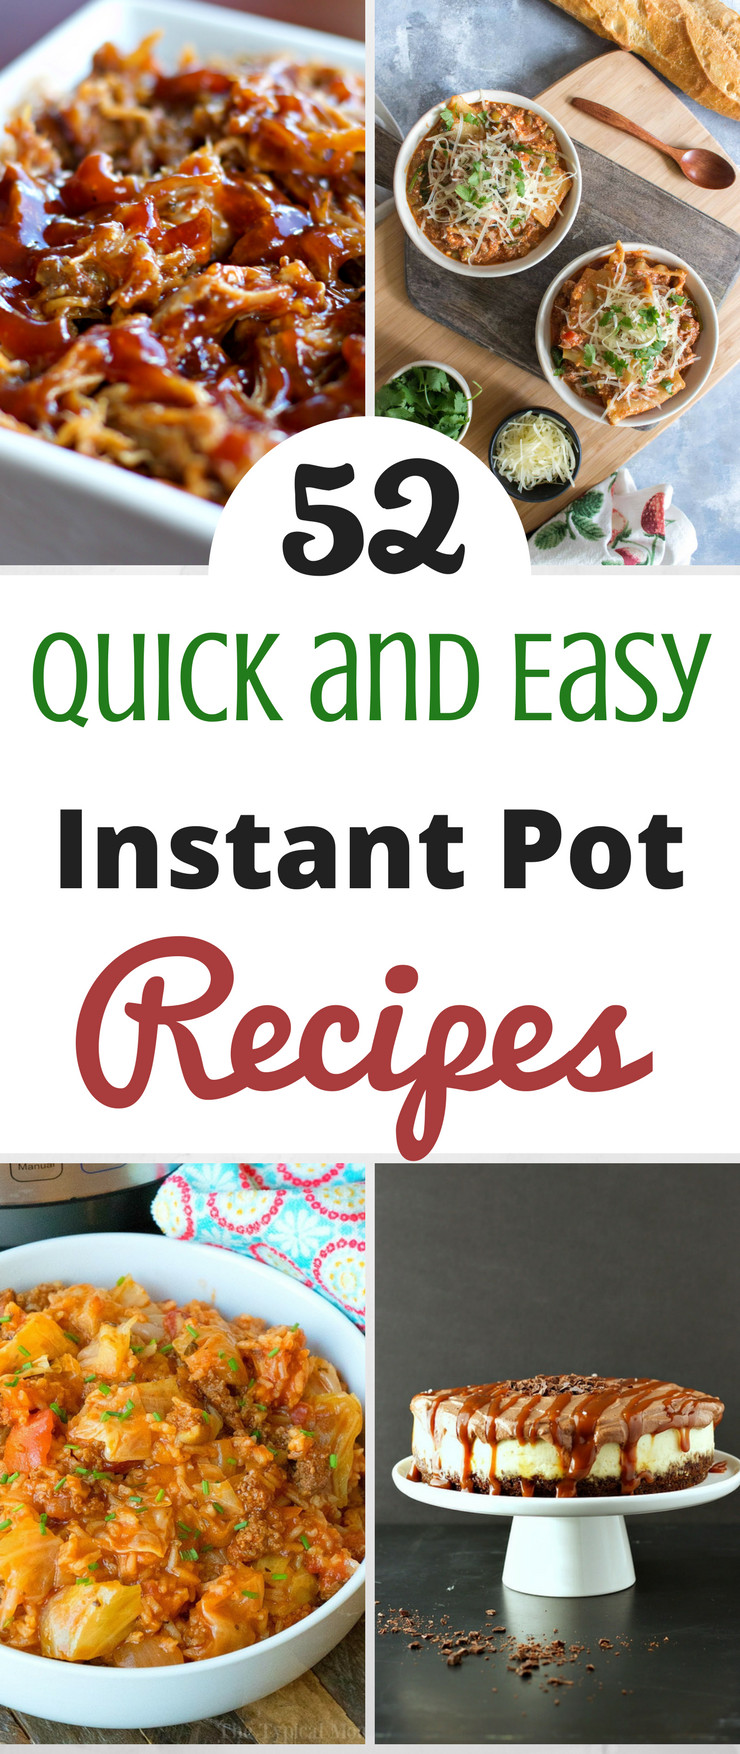 Easy Instant Pot Recipes
 52 Quick and Easy Instant Pot Recipes SlickHousewives